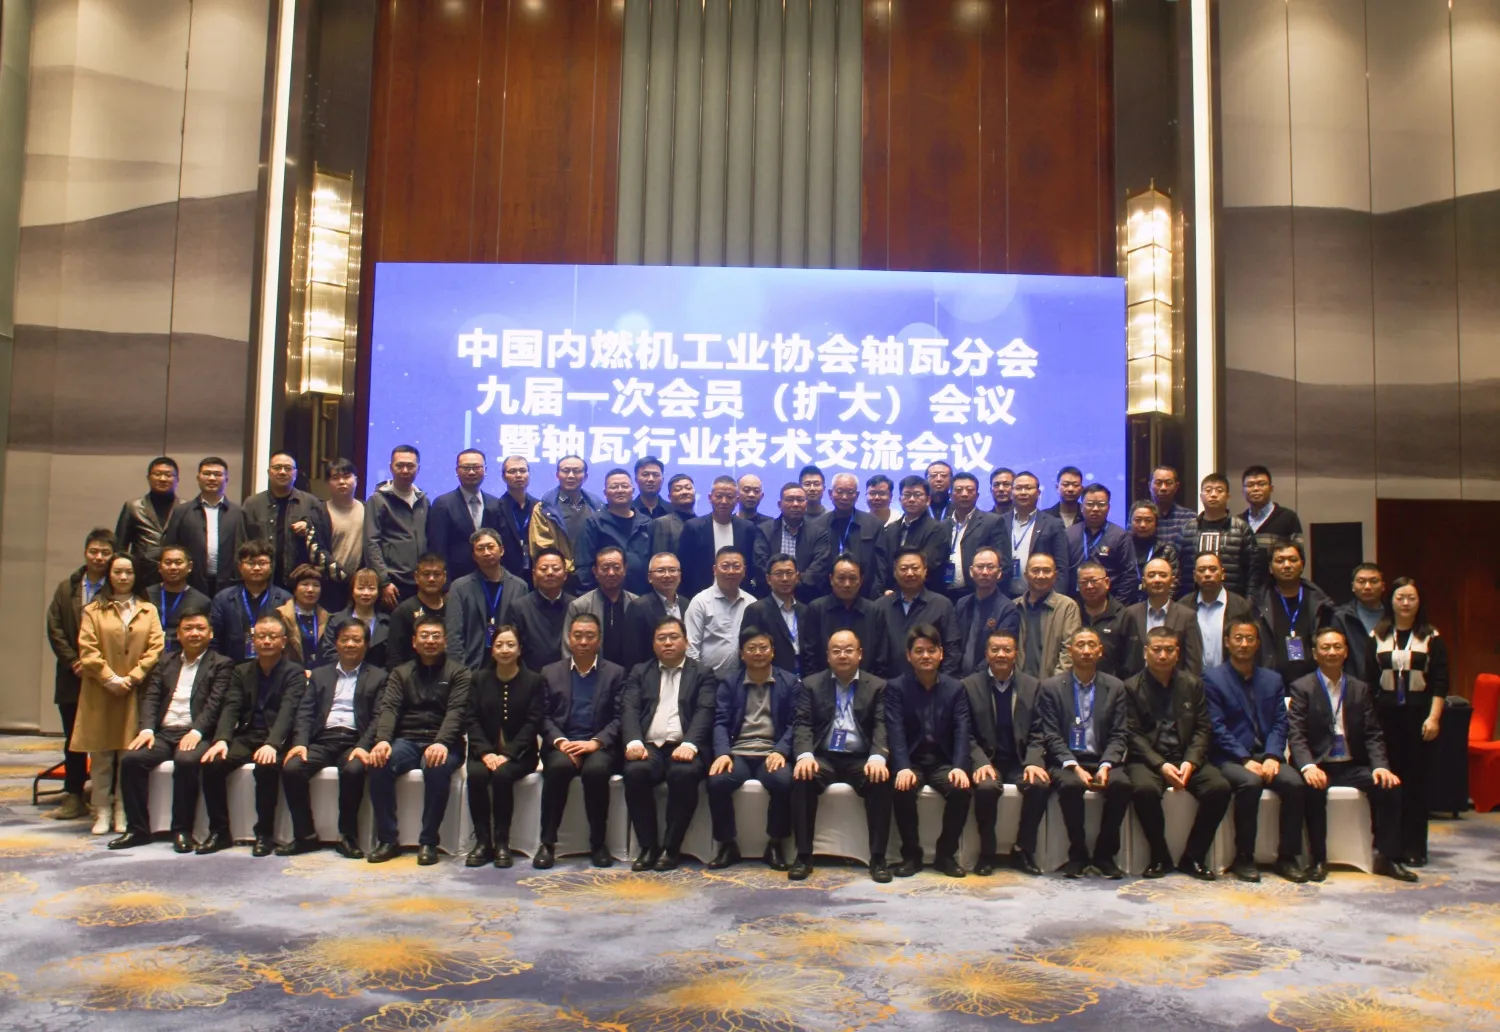 نهمین جلسه اعضا (گسترش یافته) نهمین جلسه انجمن صنعت ماشین آلات سوزاندن داخلی چین در آنهویی برگزار شد.